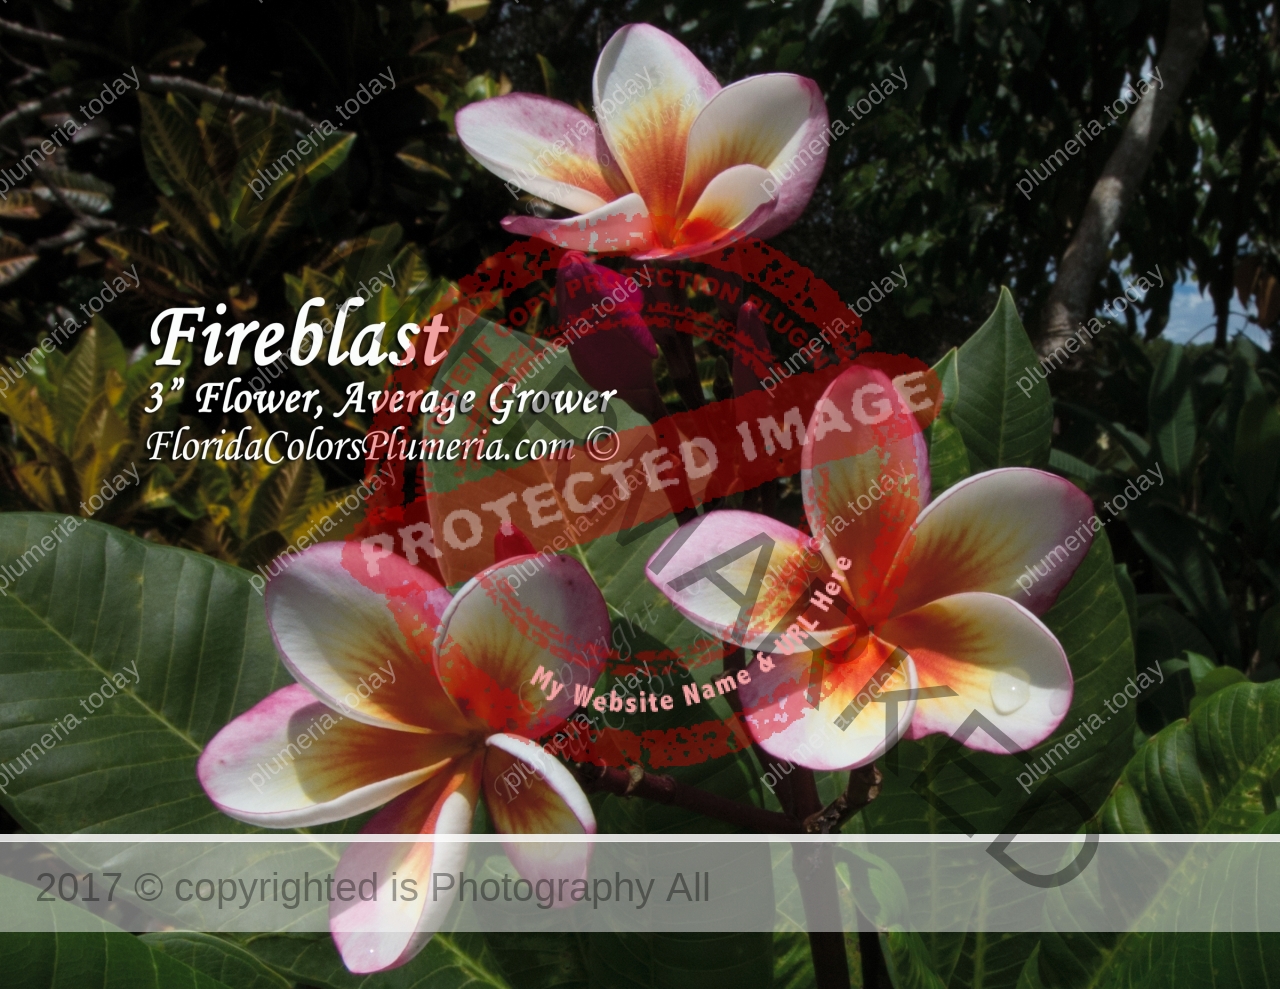 Fireblast_2120.jpg